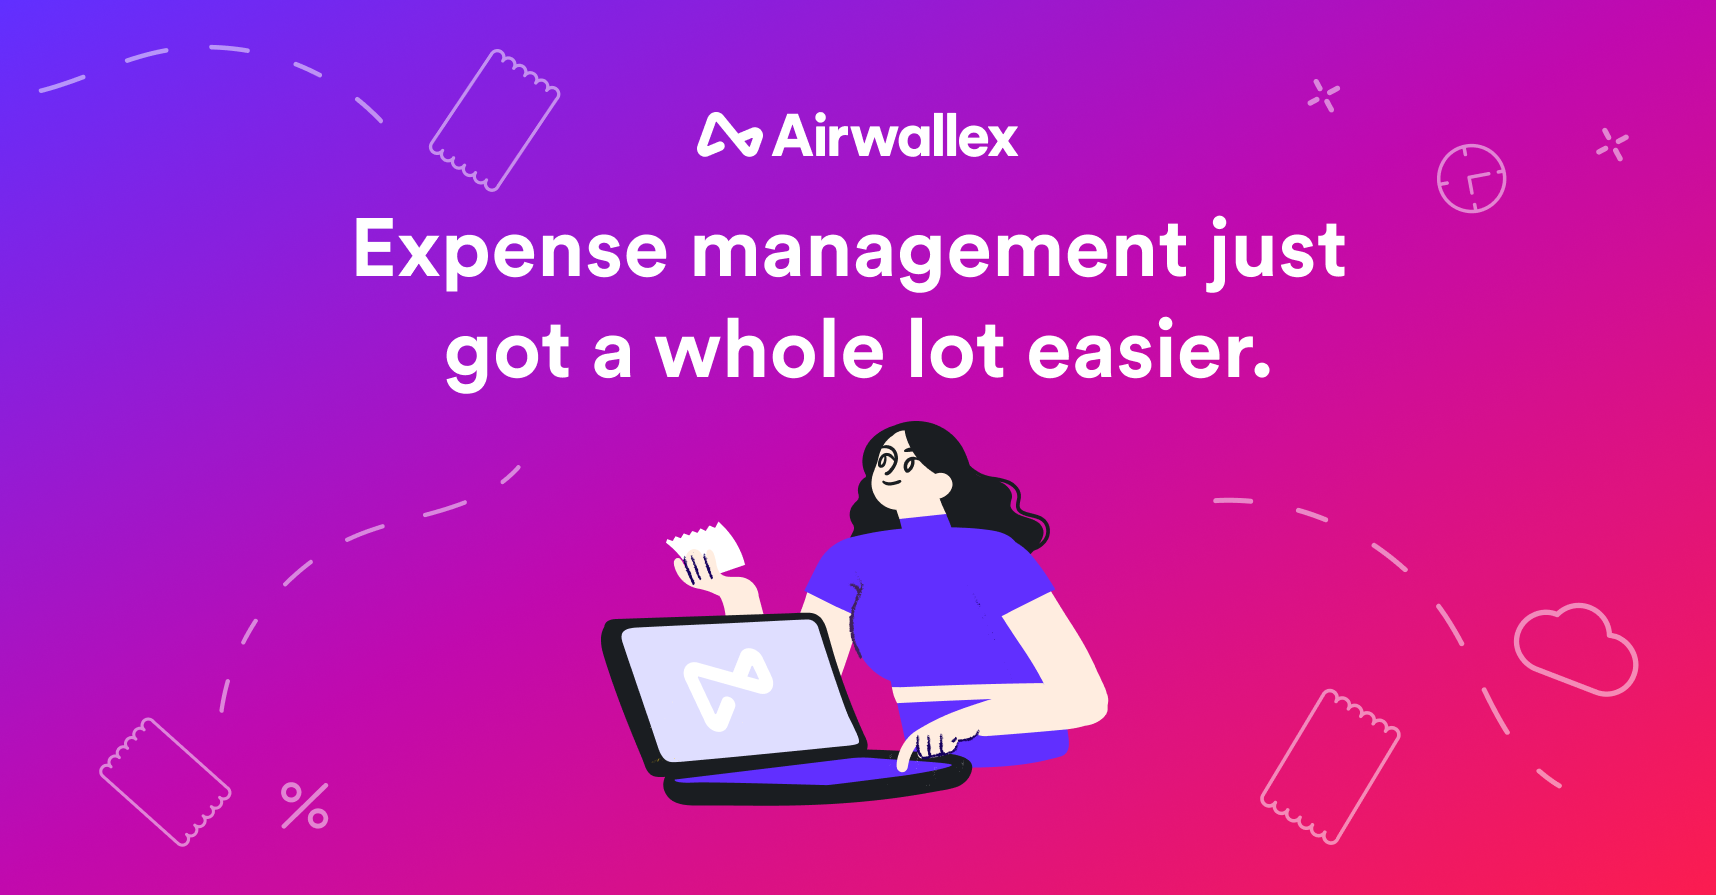 Airwallex空中云汇上线费用管理平台，帮助企业解决财务管理中的痛点